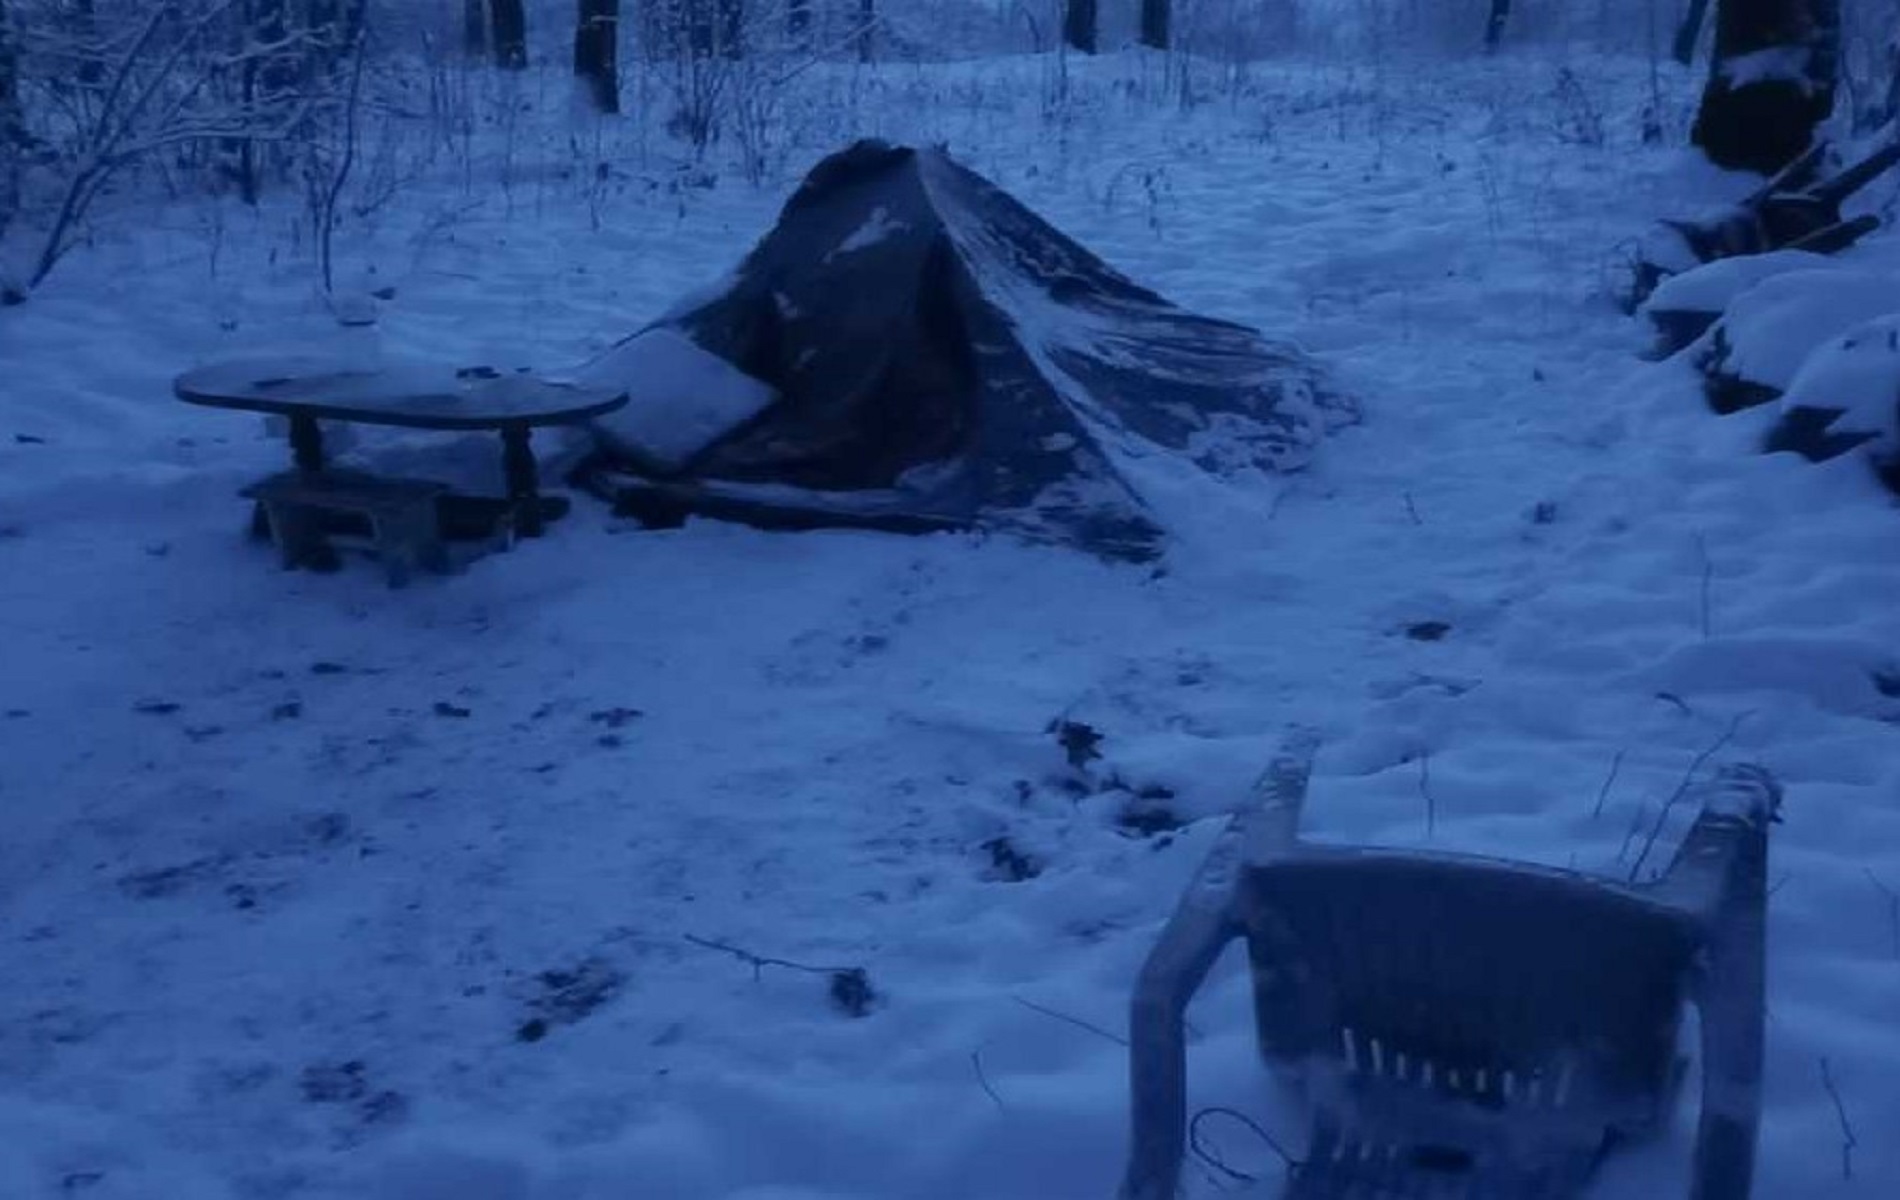 nie zważali na śnieg i mróz. przy -20 stopniach celsjusza spali w namiocie. zareagowała policja